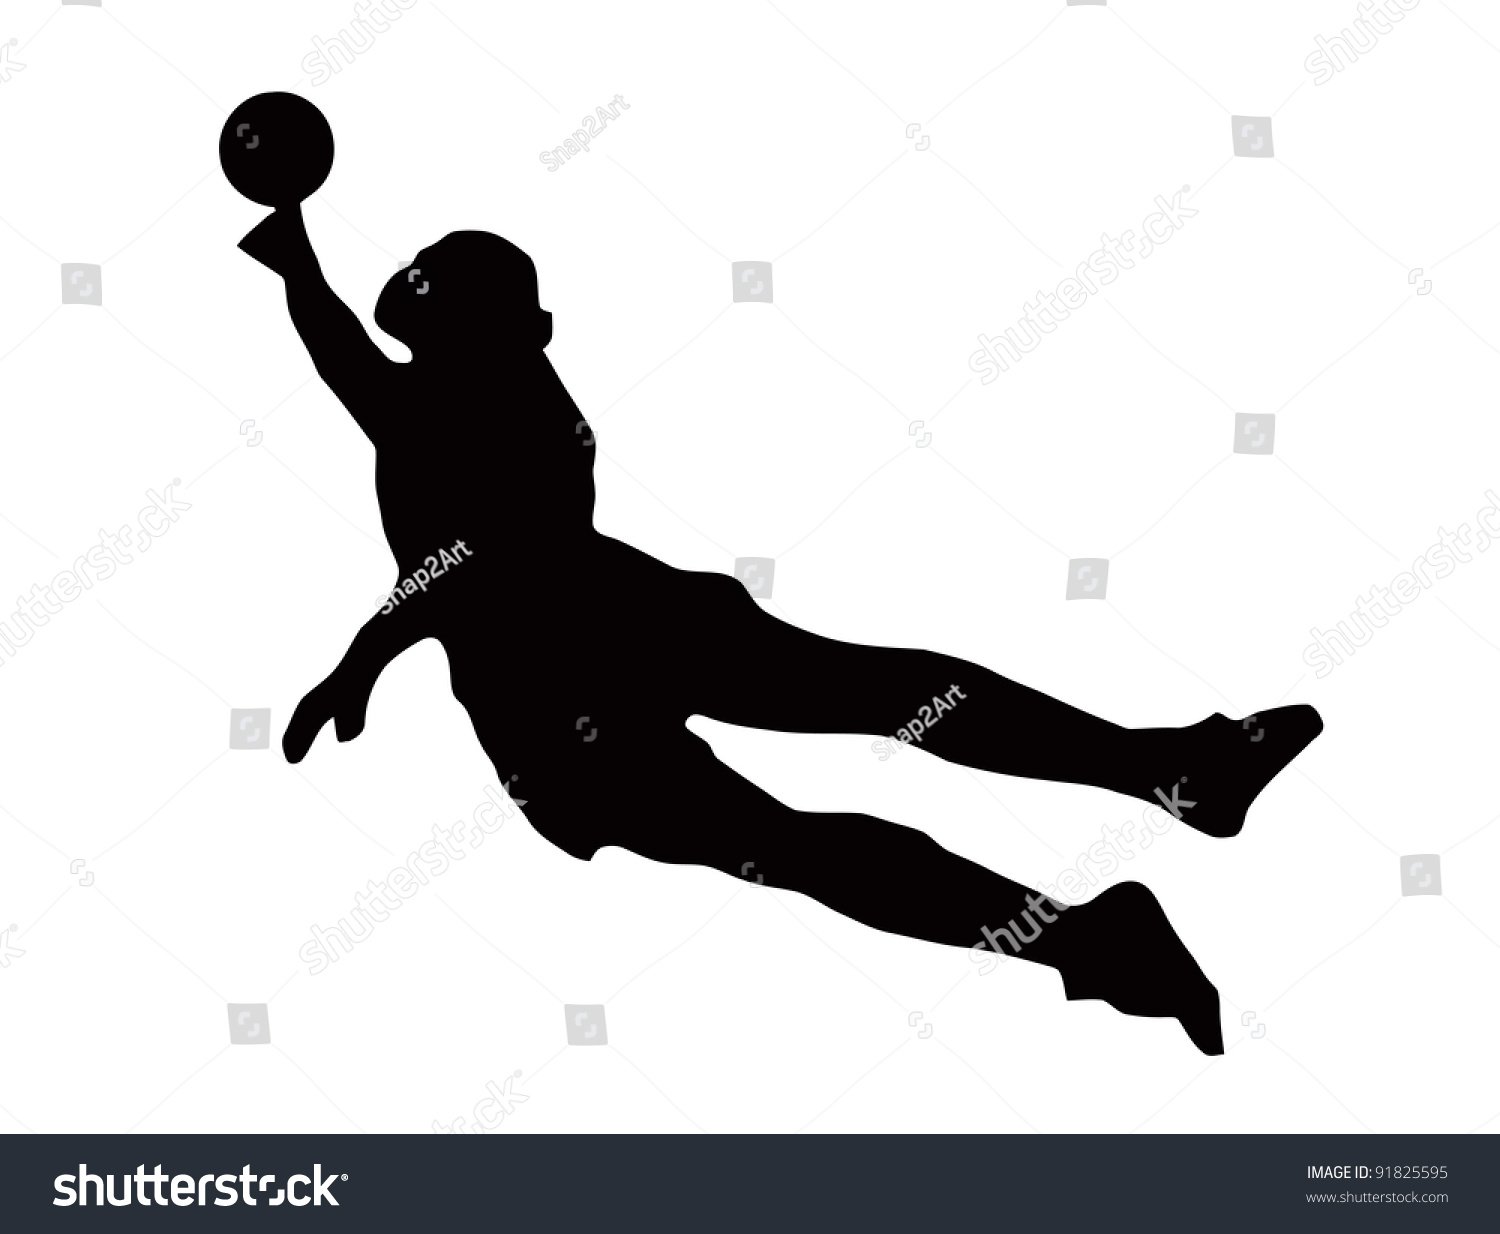 Sport Silhouette - Soccer Goalie Dive Defending Goal Stock Photo ...